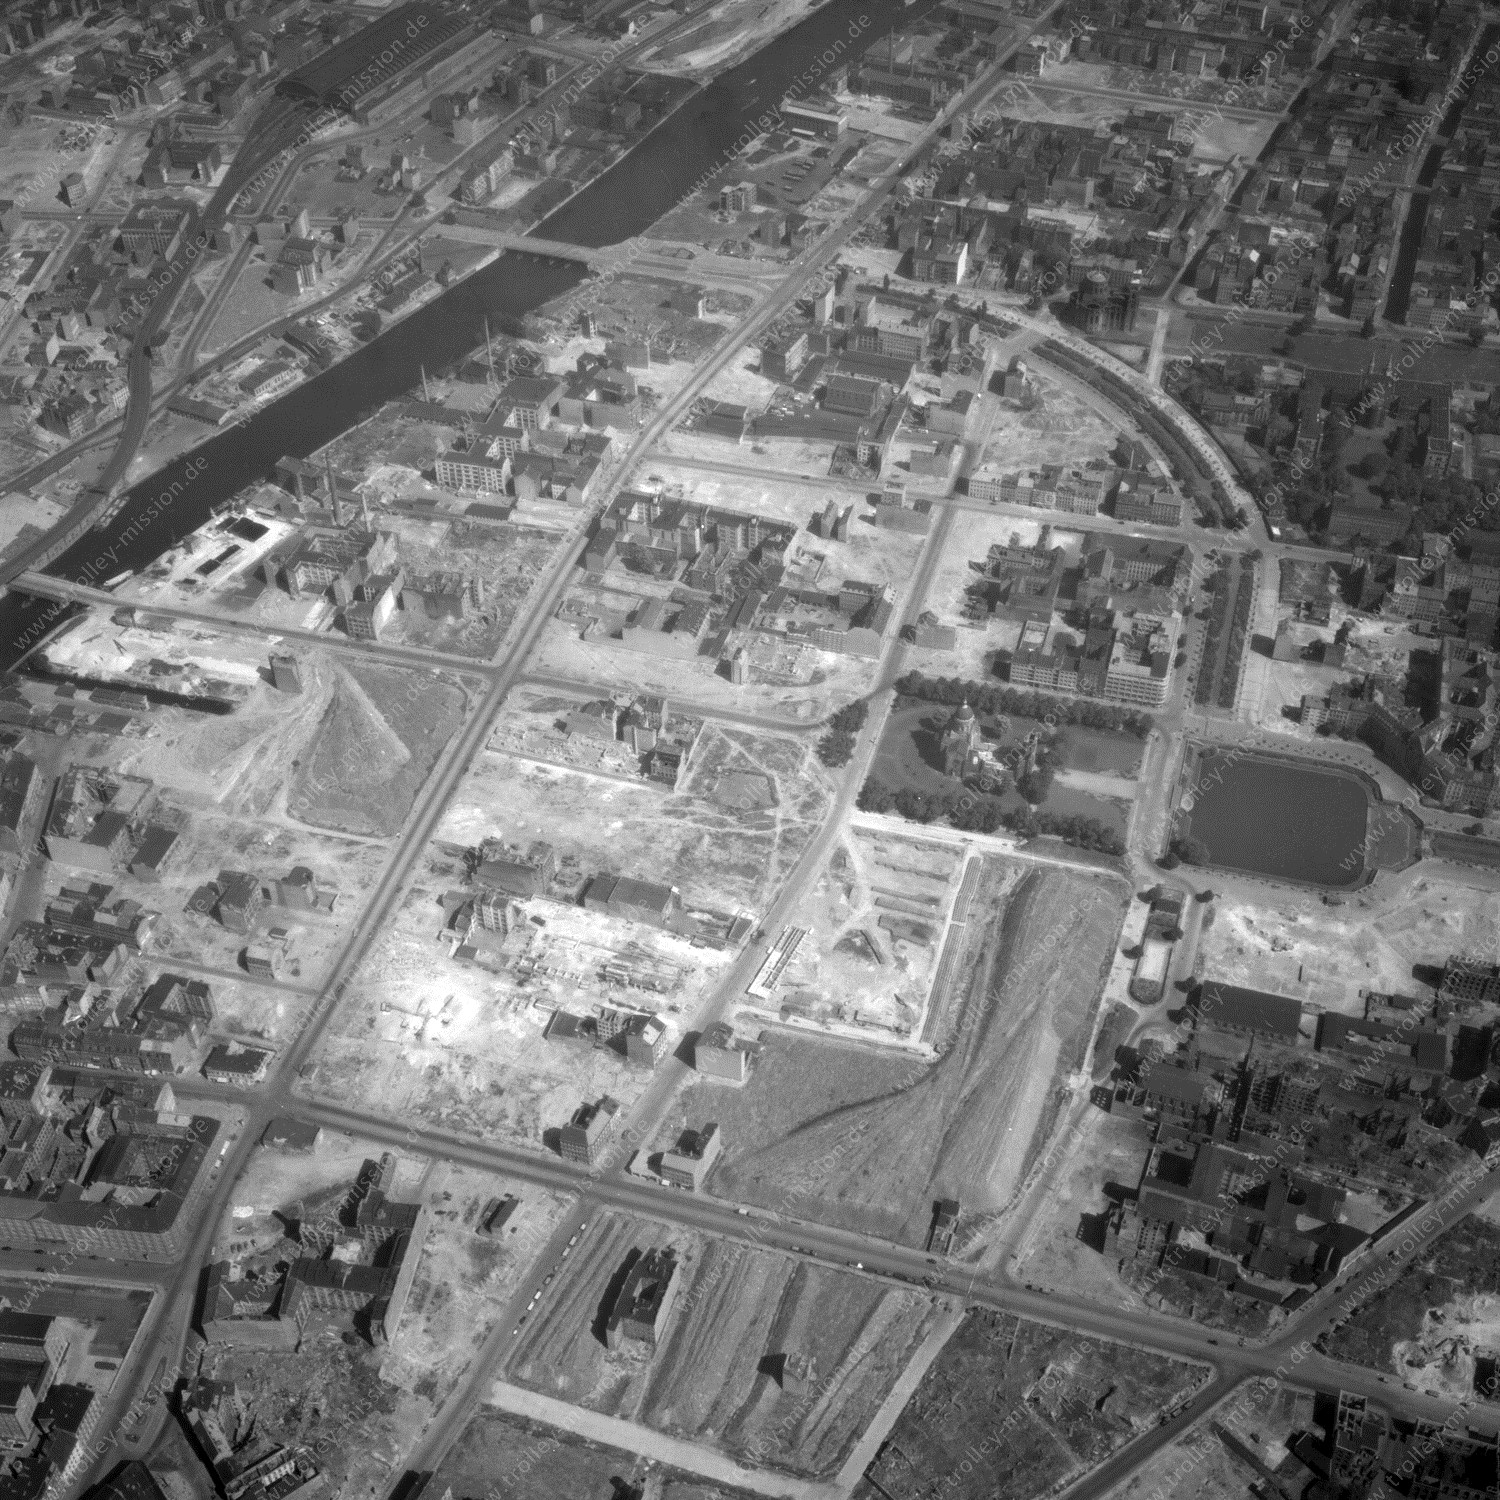 Alte Fotos und Luftbilder von Berlin - Luftbildaufnahme Nr. 09 - Historische Luftaufnahmen von West-Berlin aus dem Jahr 1954 - Flugstrecke Lima